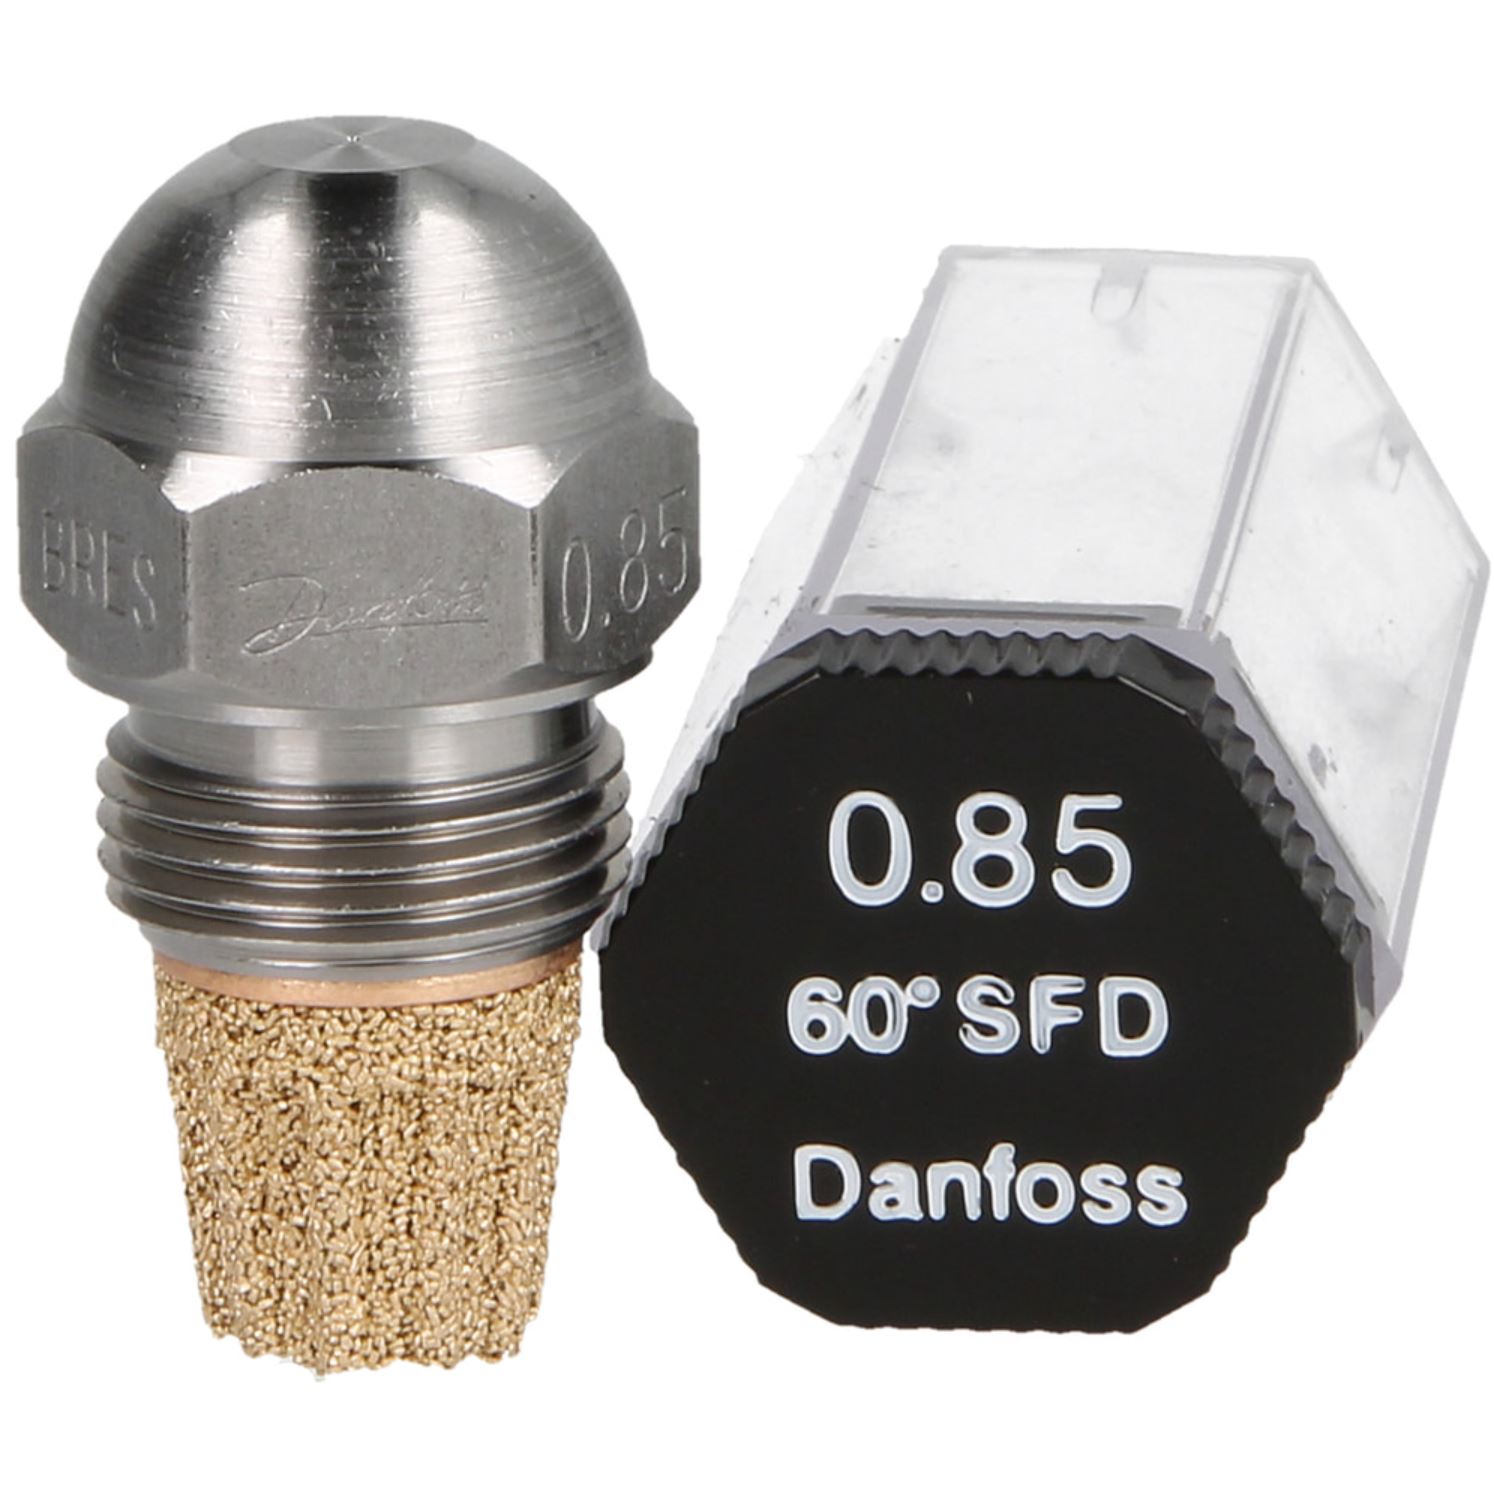 Danfoss-Öldüse 0,85 60°SF-D